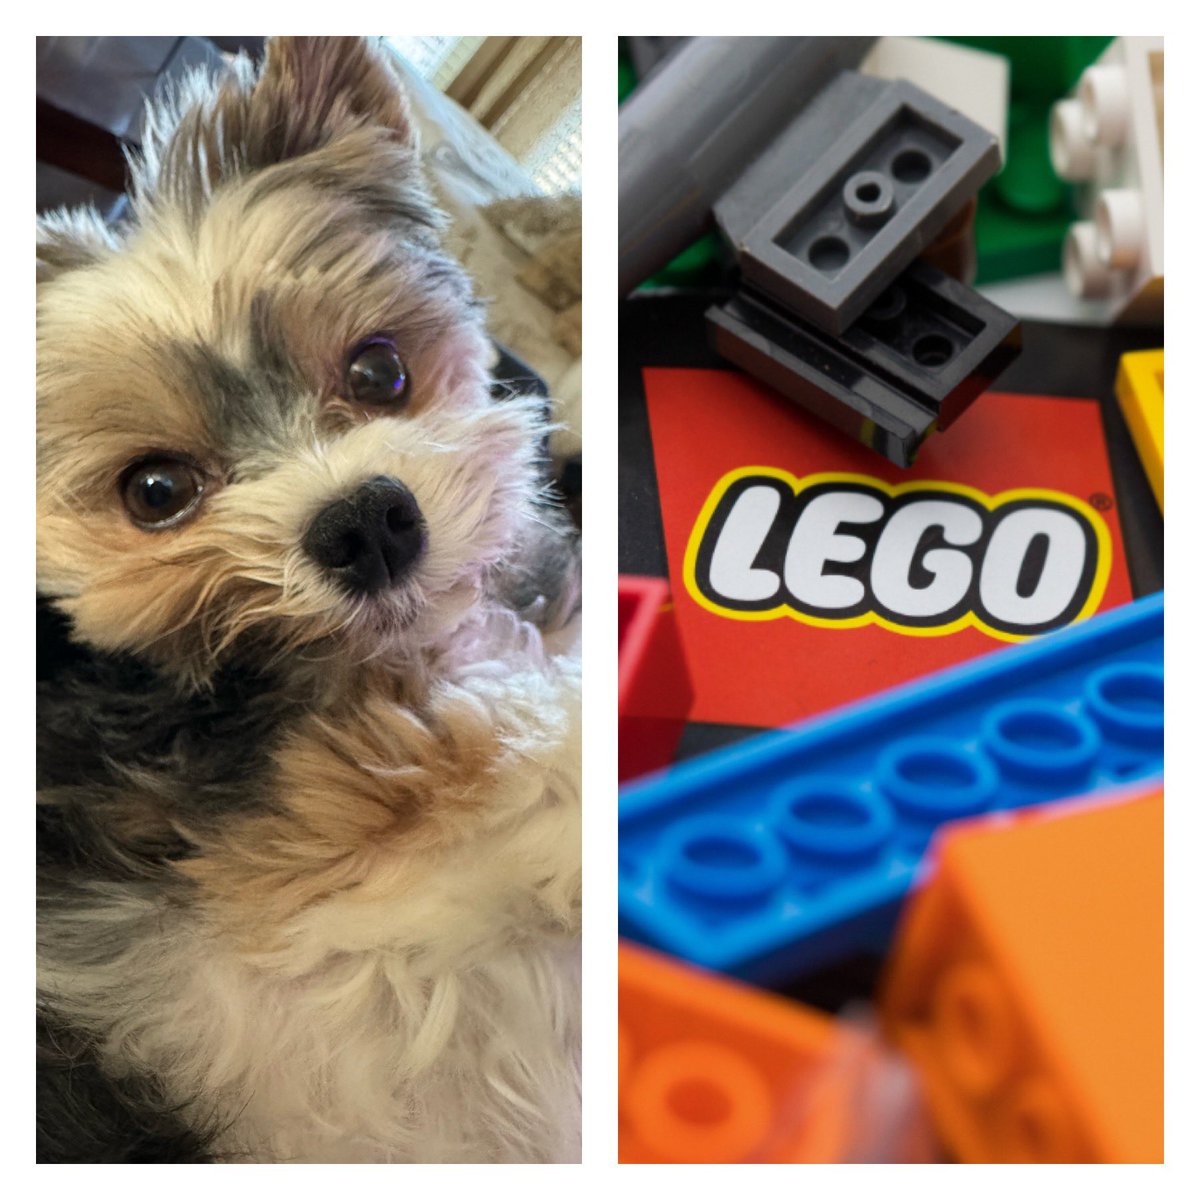 Gio. Happy Sunday & International Lego Day 🧩❤️🐾🥰👋🏻 #InternationalLegoDay #smile